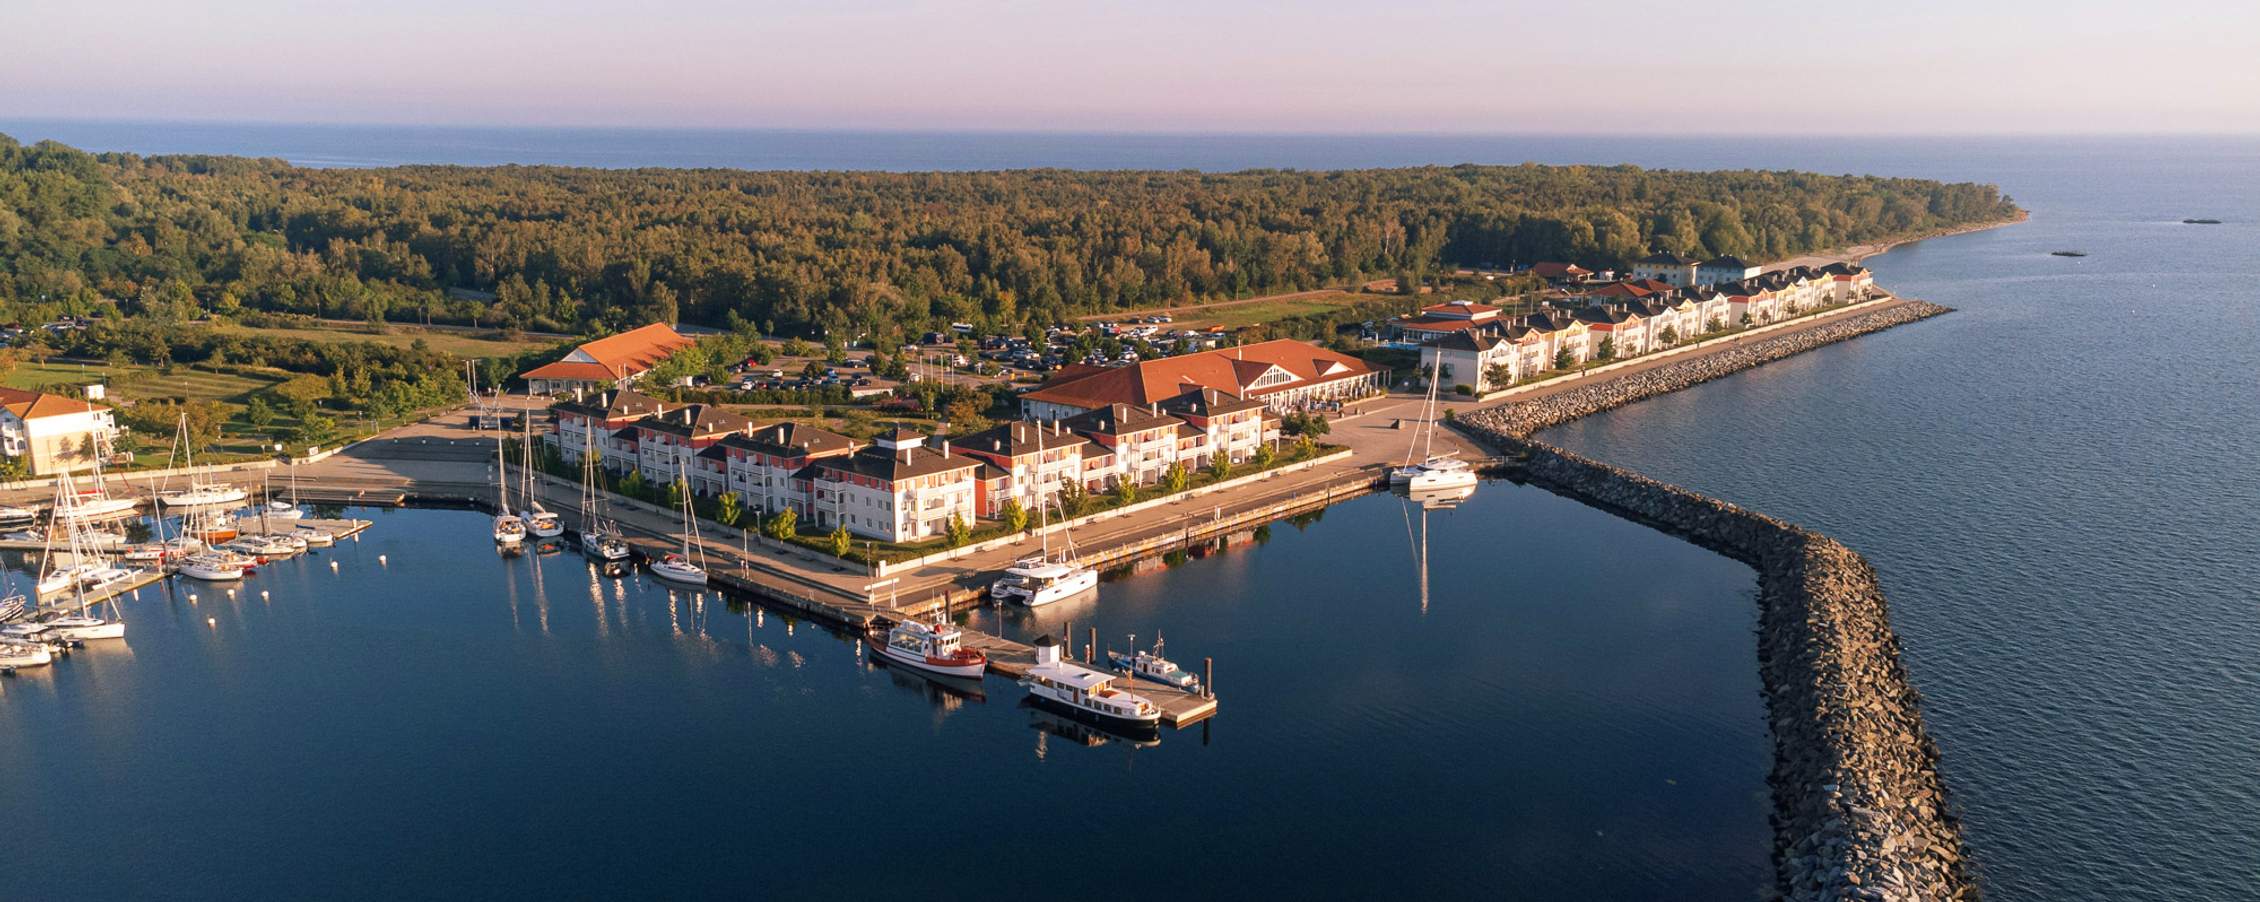 BEECH Resort Boltenhagen – Heimathafen direkt an der Ostsee